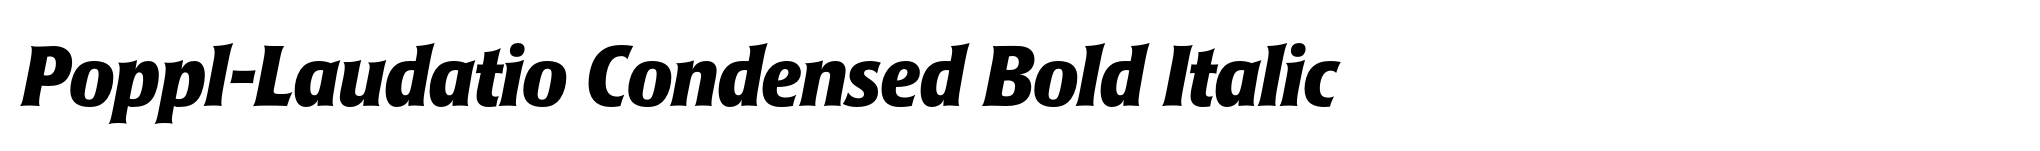 Poppl-Laudatio Condensed Bold Italic image